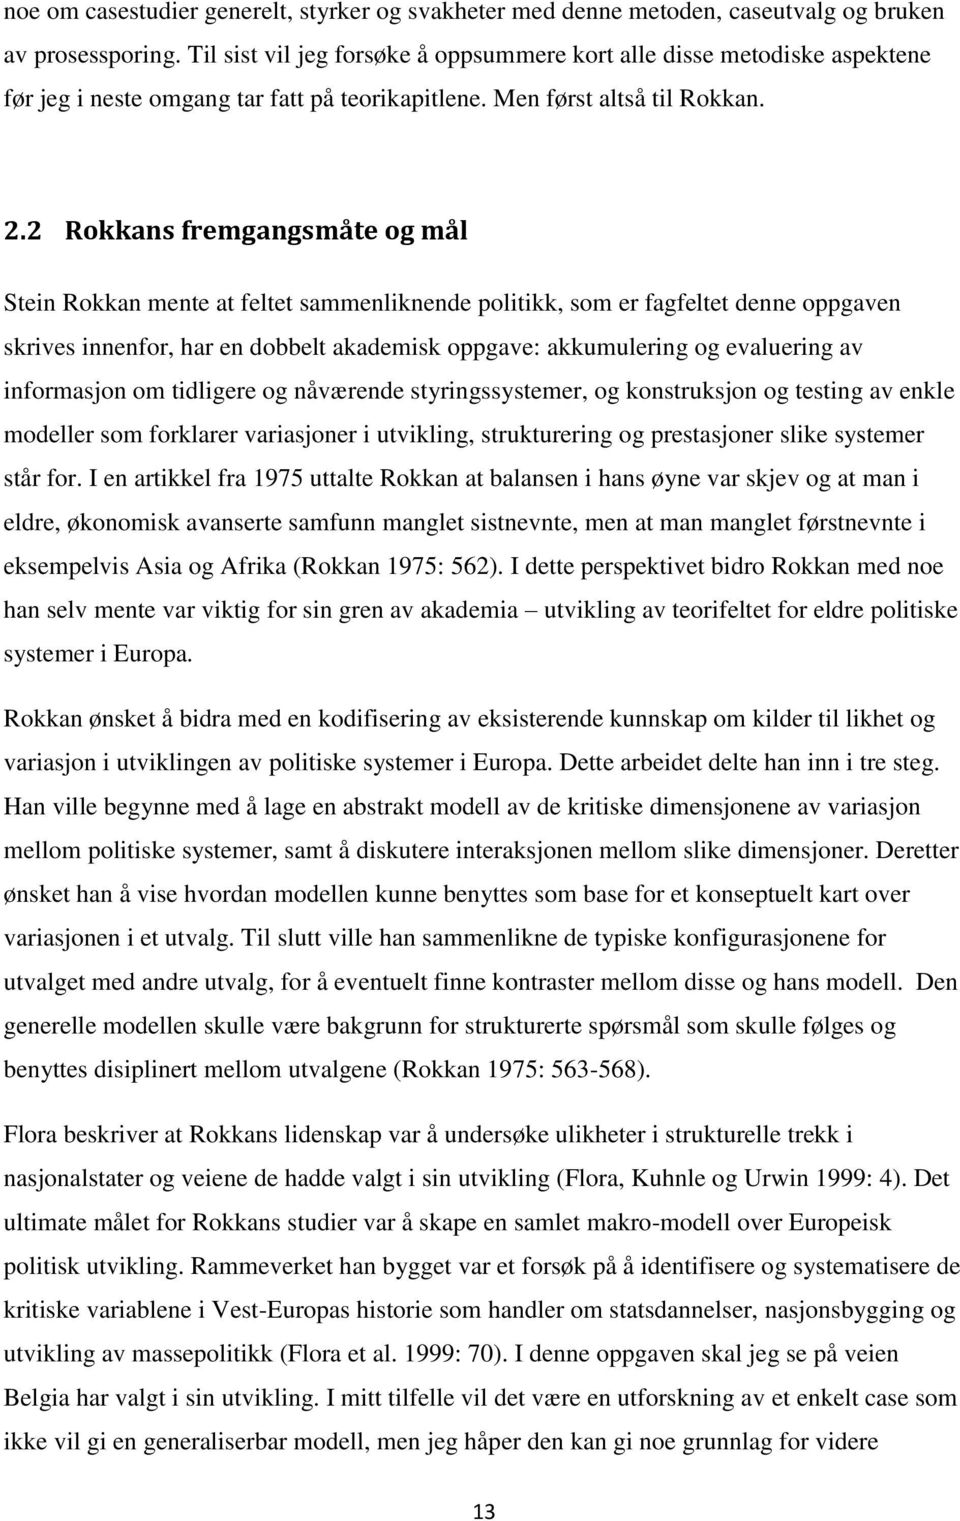 2 Rokkans fremgangsmåte og mål Stein Rokkan mente at feltet sammenliknende politikk, som er fagfeltet denne oppgaven skrives innenfor, har en dobbelt akademisk oppgave: akkumulering og evaluering av